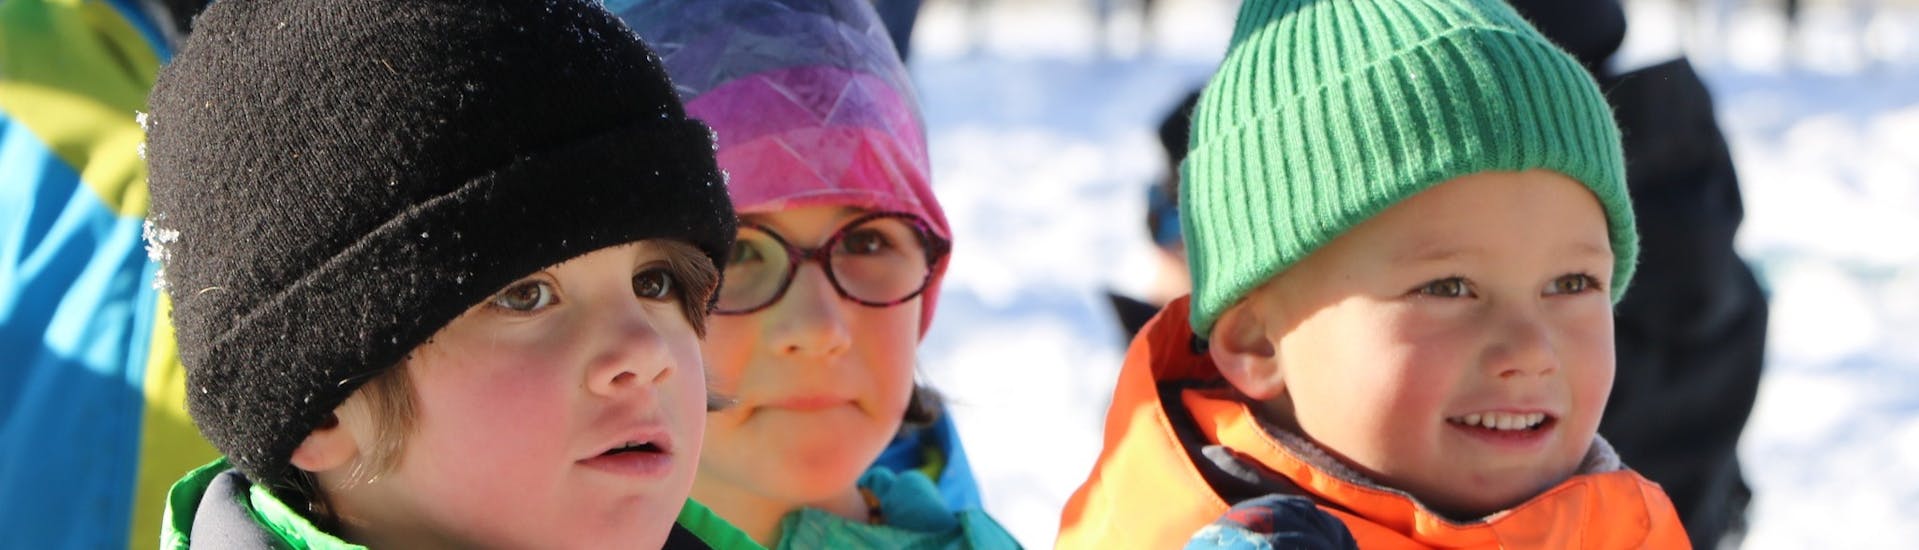 Clases de esquí para niños "Baby Ski" (2-3 años).